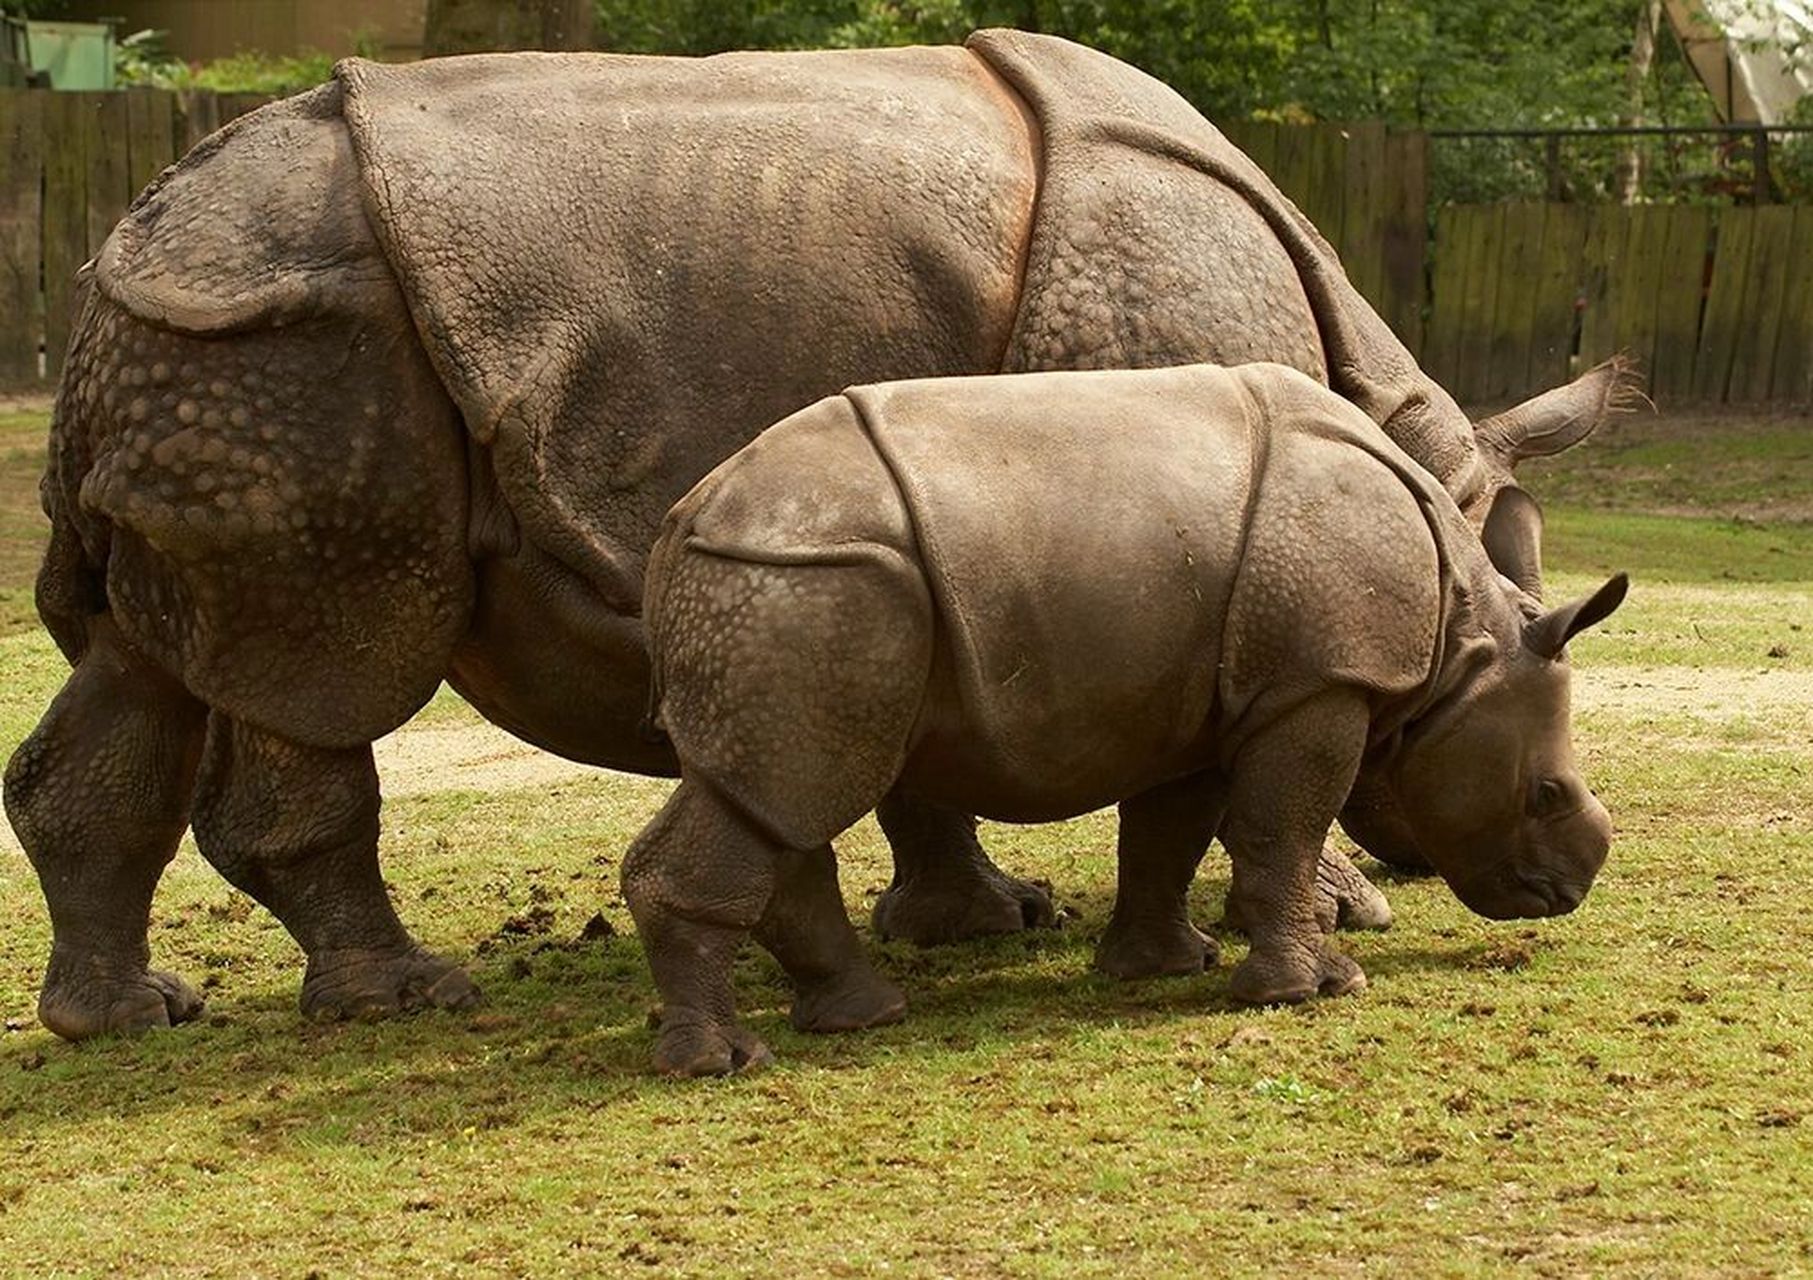 全球不足百头的珍惜野生动物——爪哇犀 爪哇犀(学名:rhinoceros